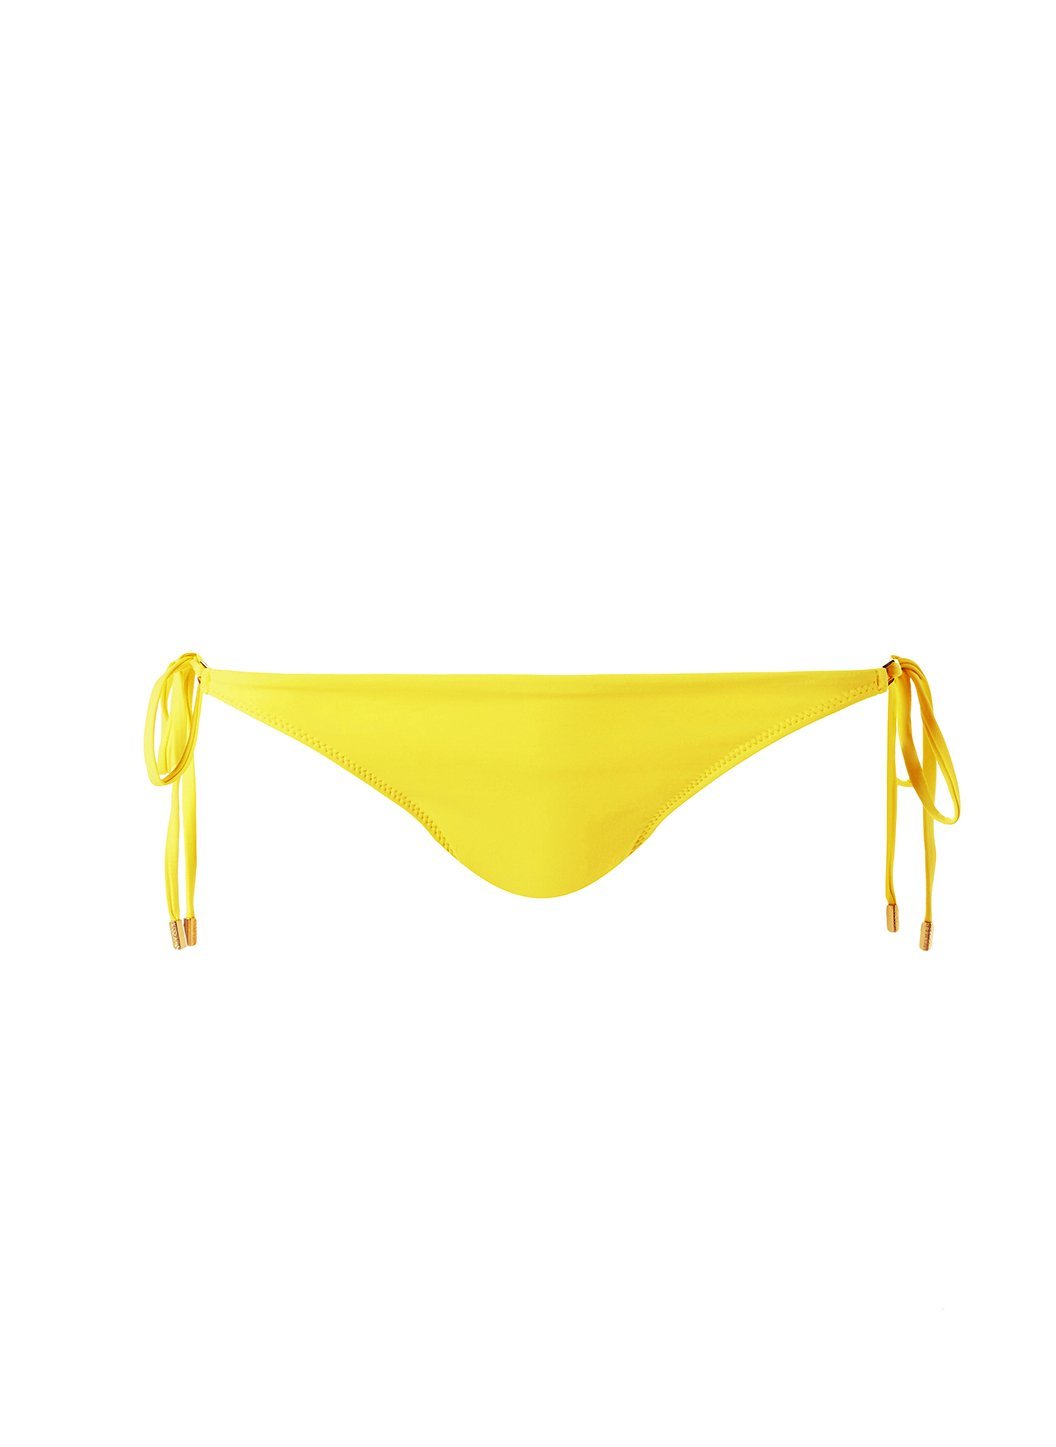 Cancun Lemon Bikini Bottom Cutout 